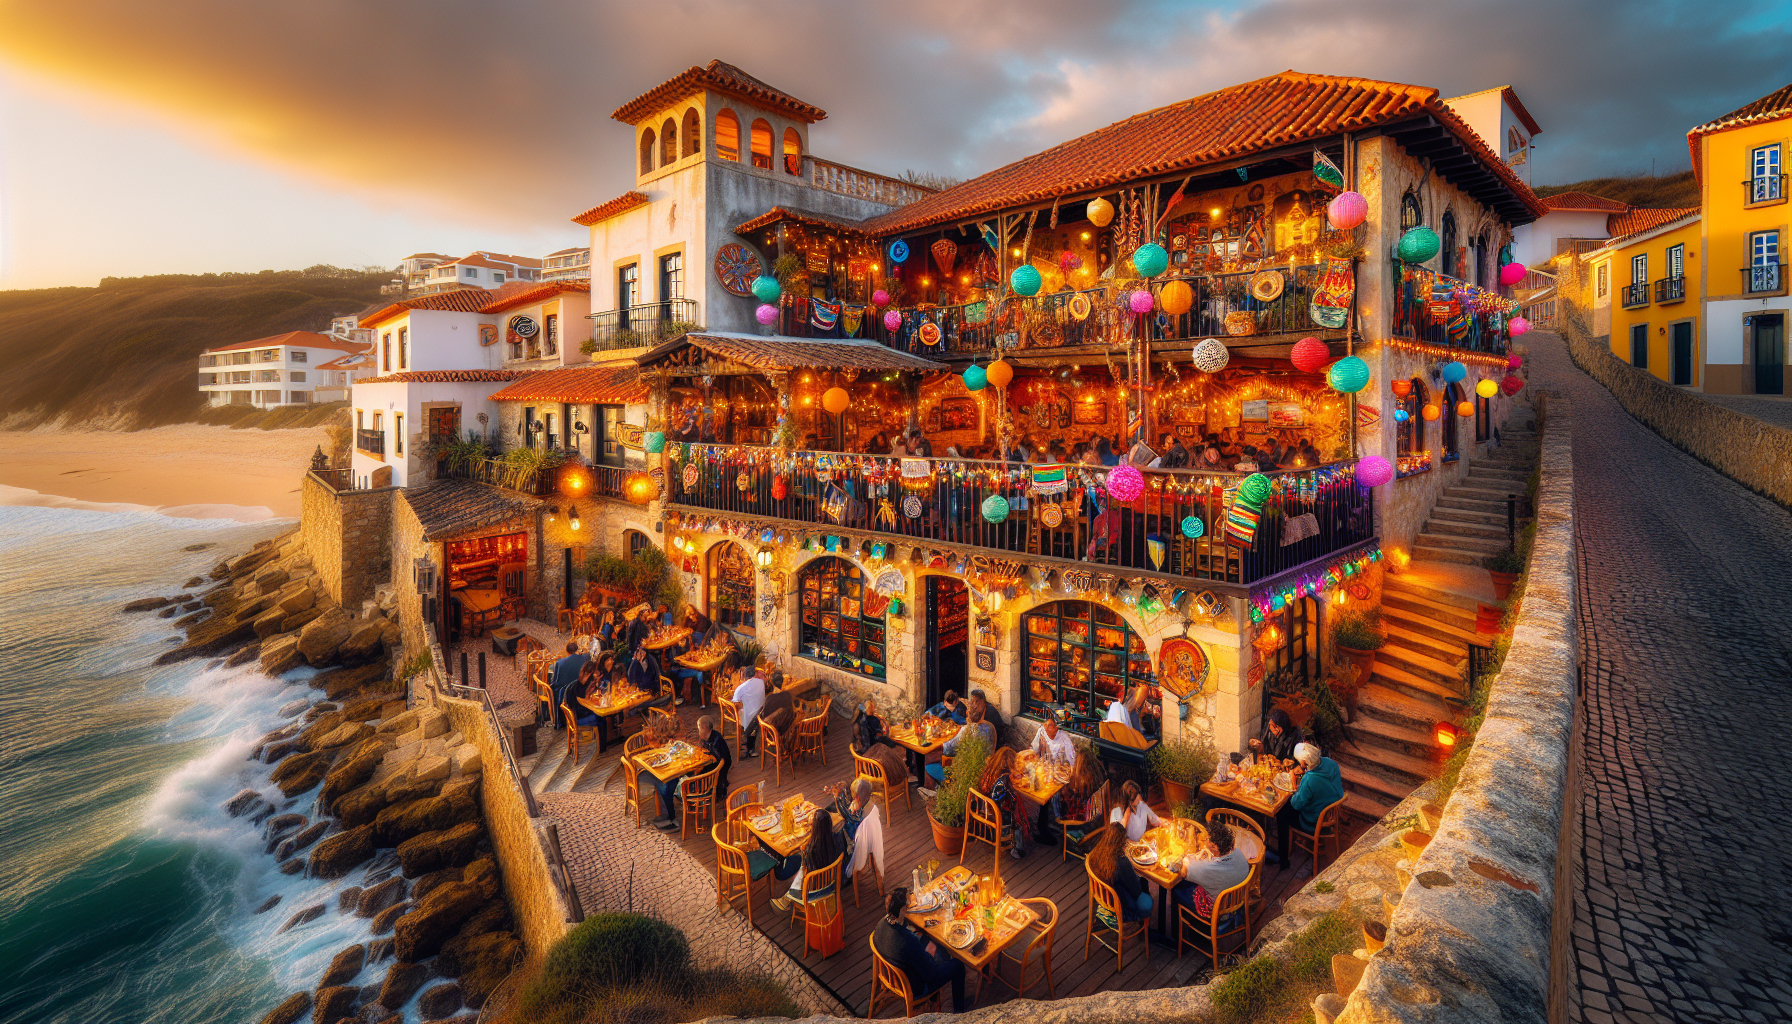 Descubra o Melhor Restaurante Mexicano da Ericeira: Sabores Autênticos e Ambiente Único!